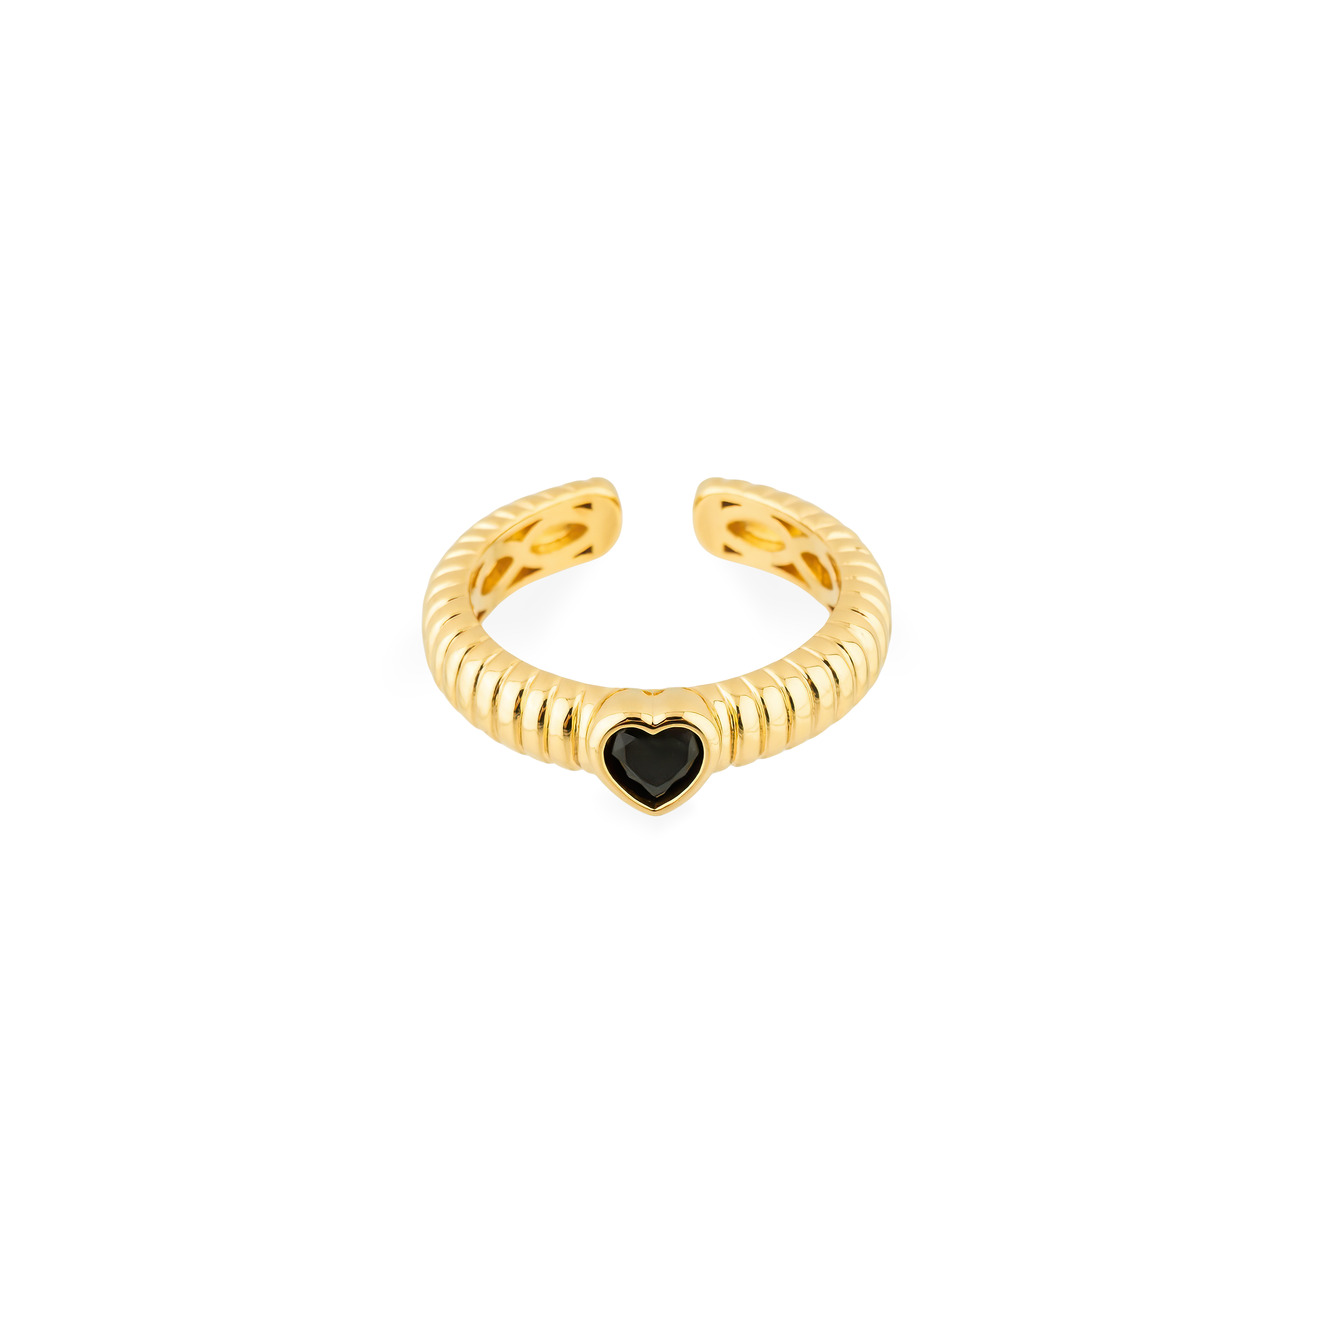 Herald Percy Золотистое фигурное кольцо с черным сердцем herald percy золотистое кольцо печатка с кристаллами